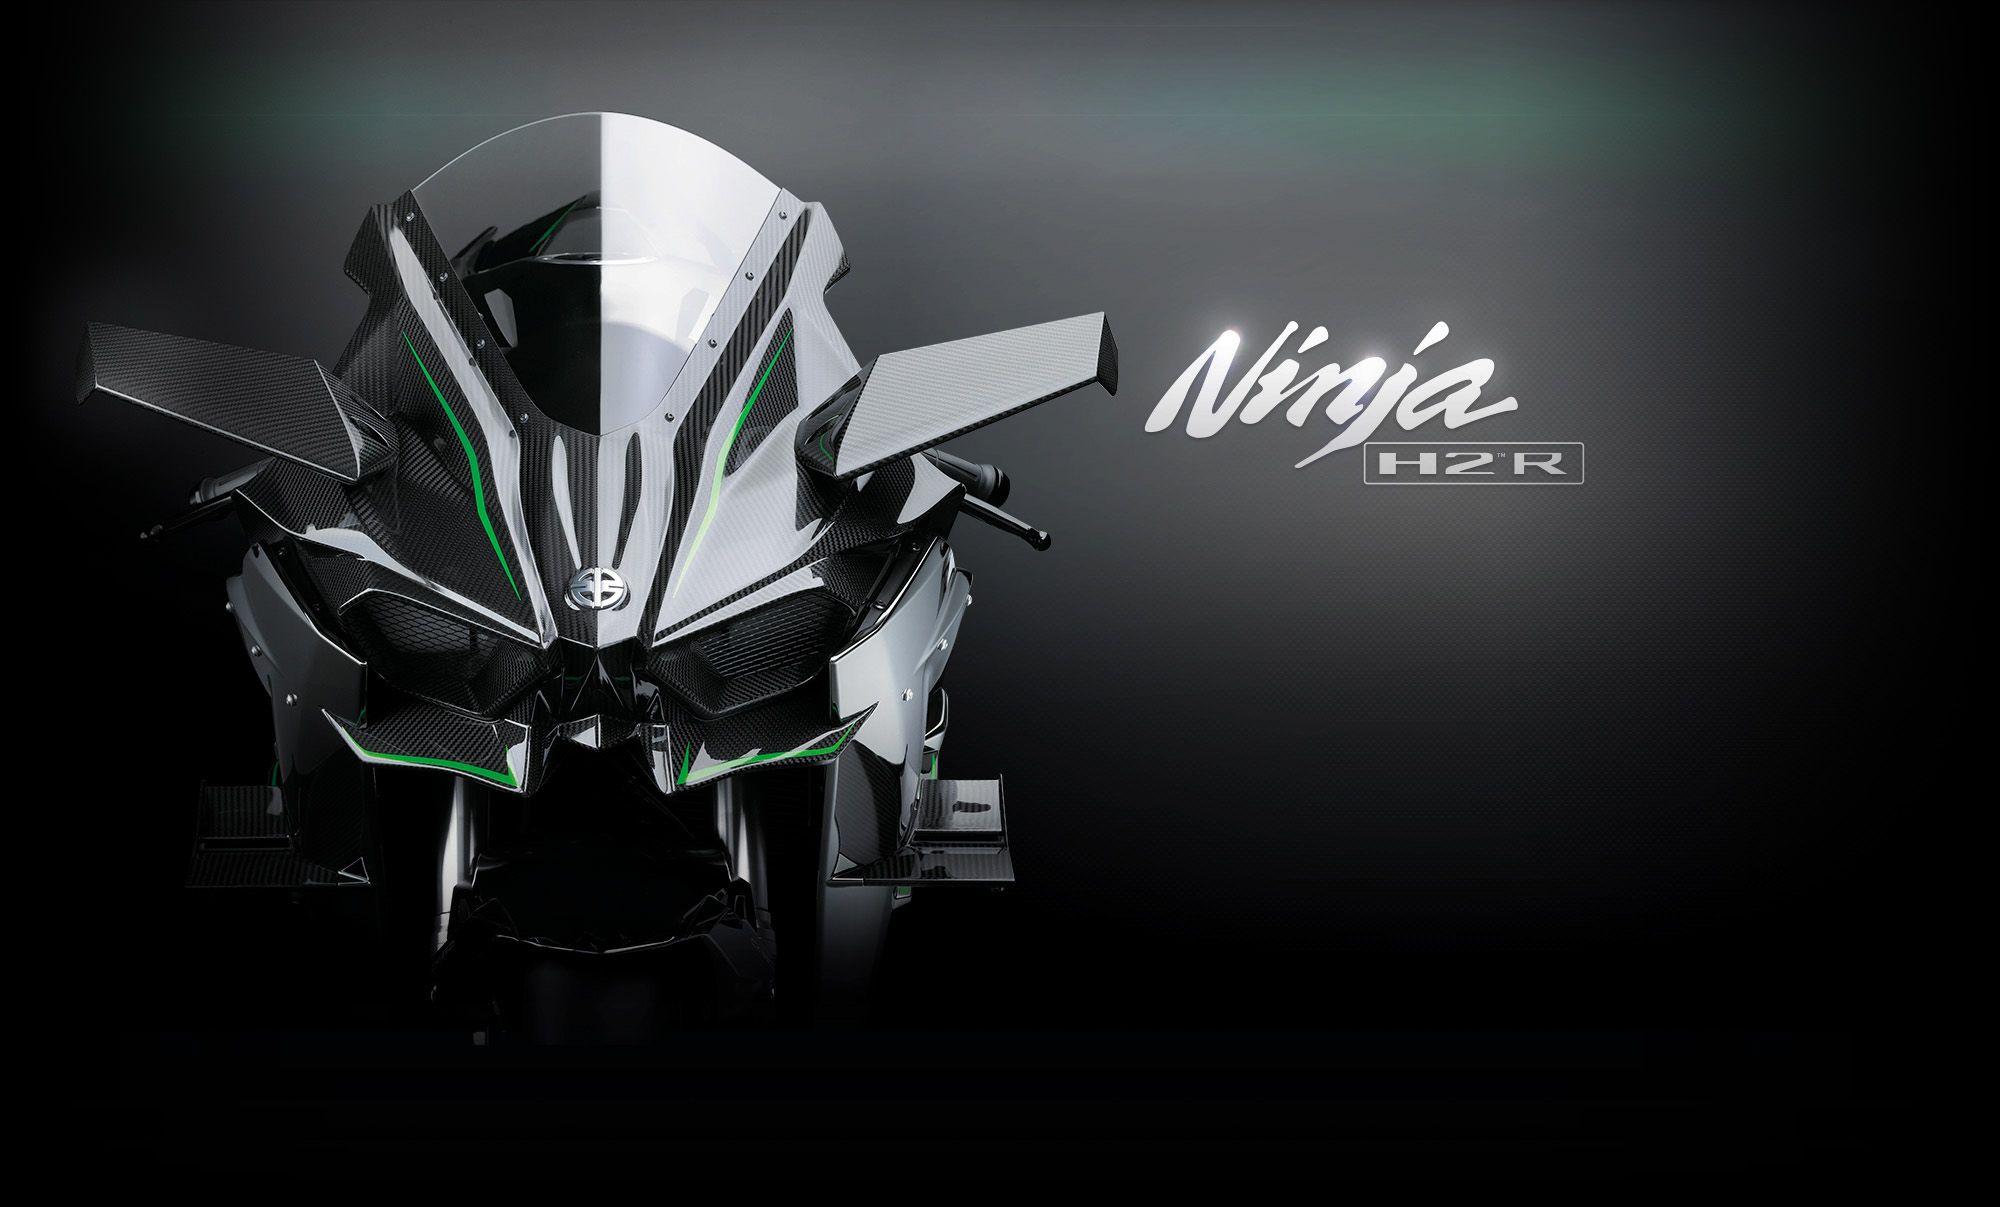 Kawasaki Ninja H2 and H2R Price Rumors Surface